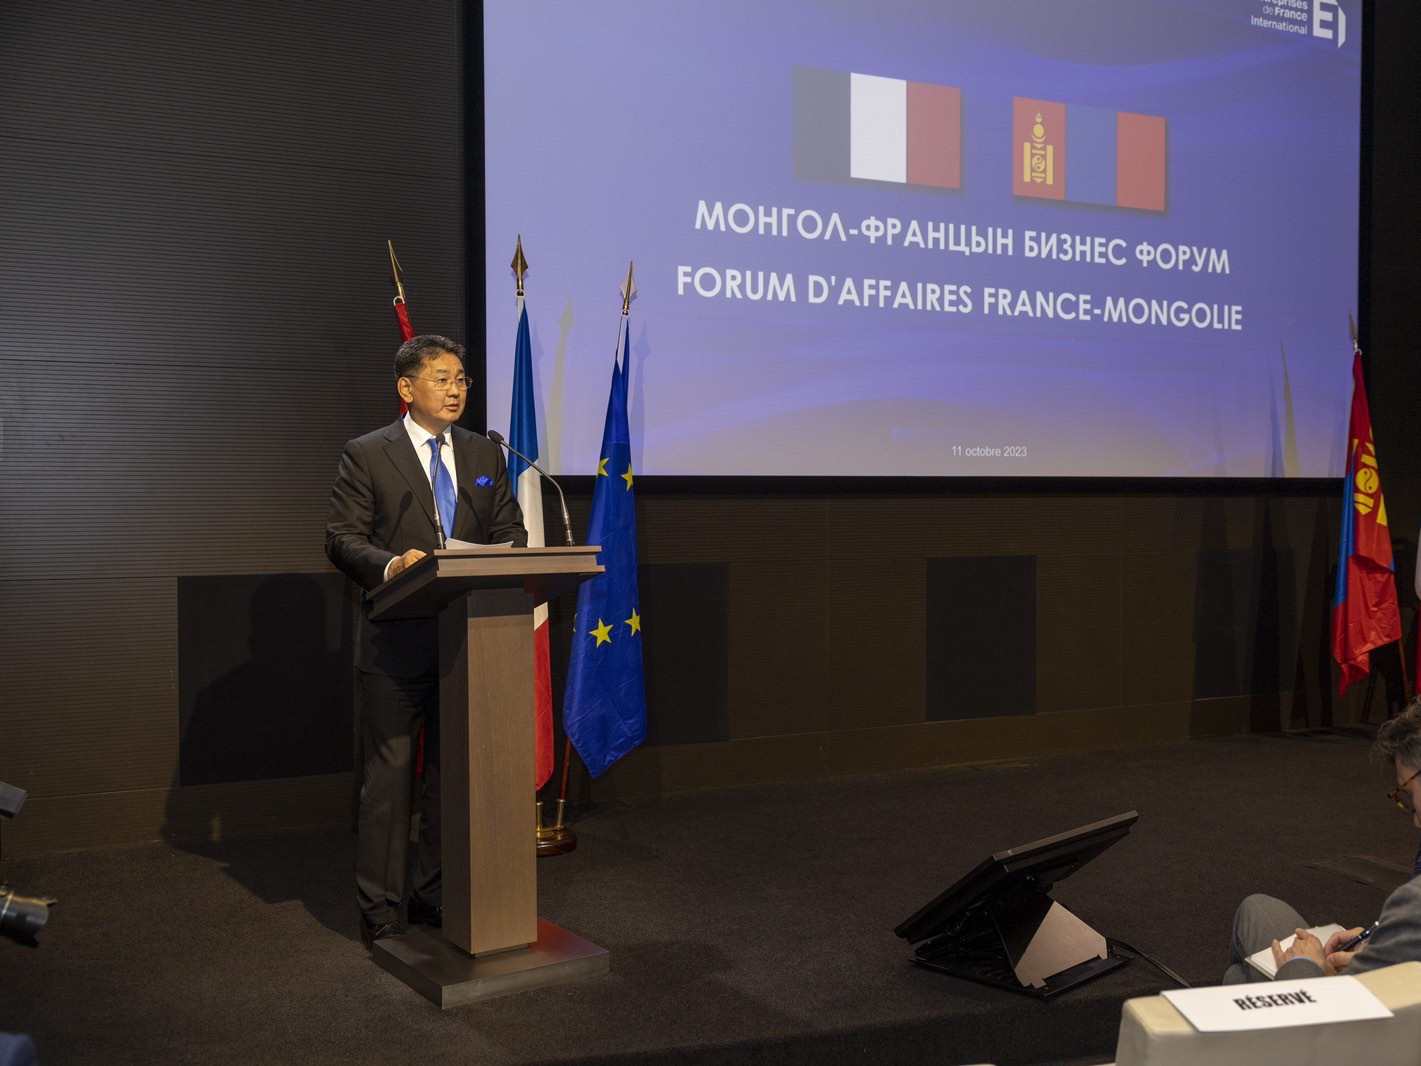 У.Хүрэлсүх: Монгол Францын эдийн засгийн хамтын ажиллагааг хөгжүүлэхэд өнөөдрийн бизнес форум чухал ач холбогдолтой